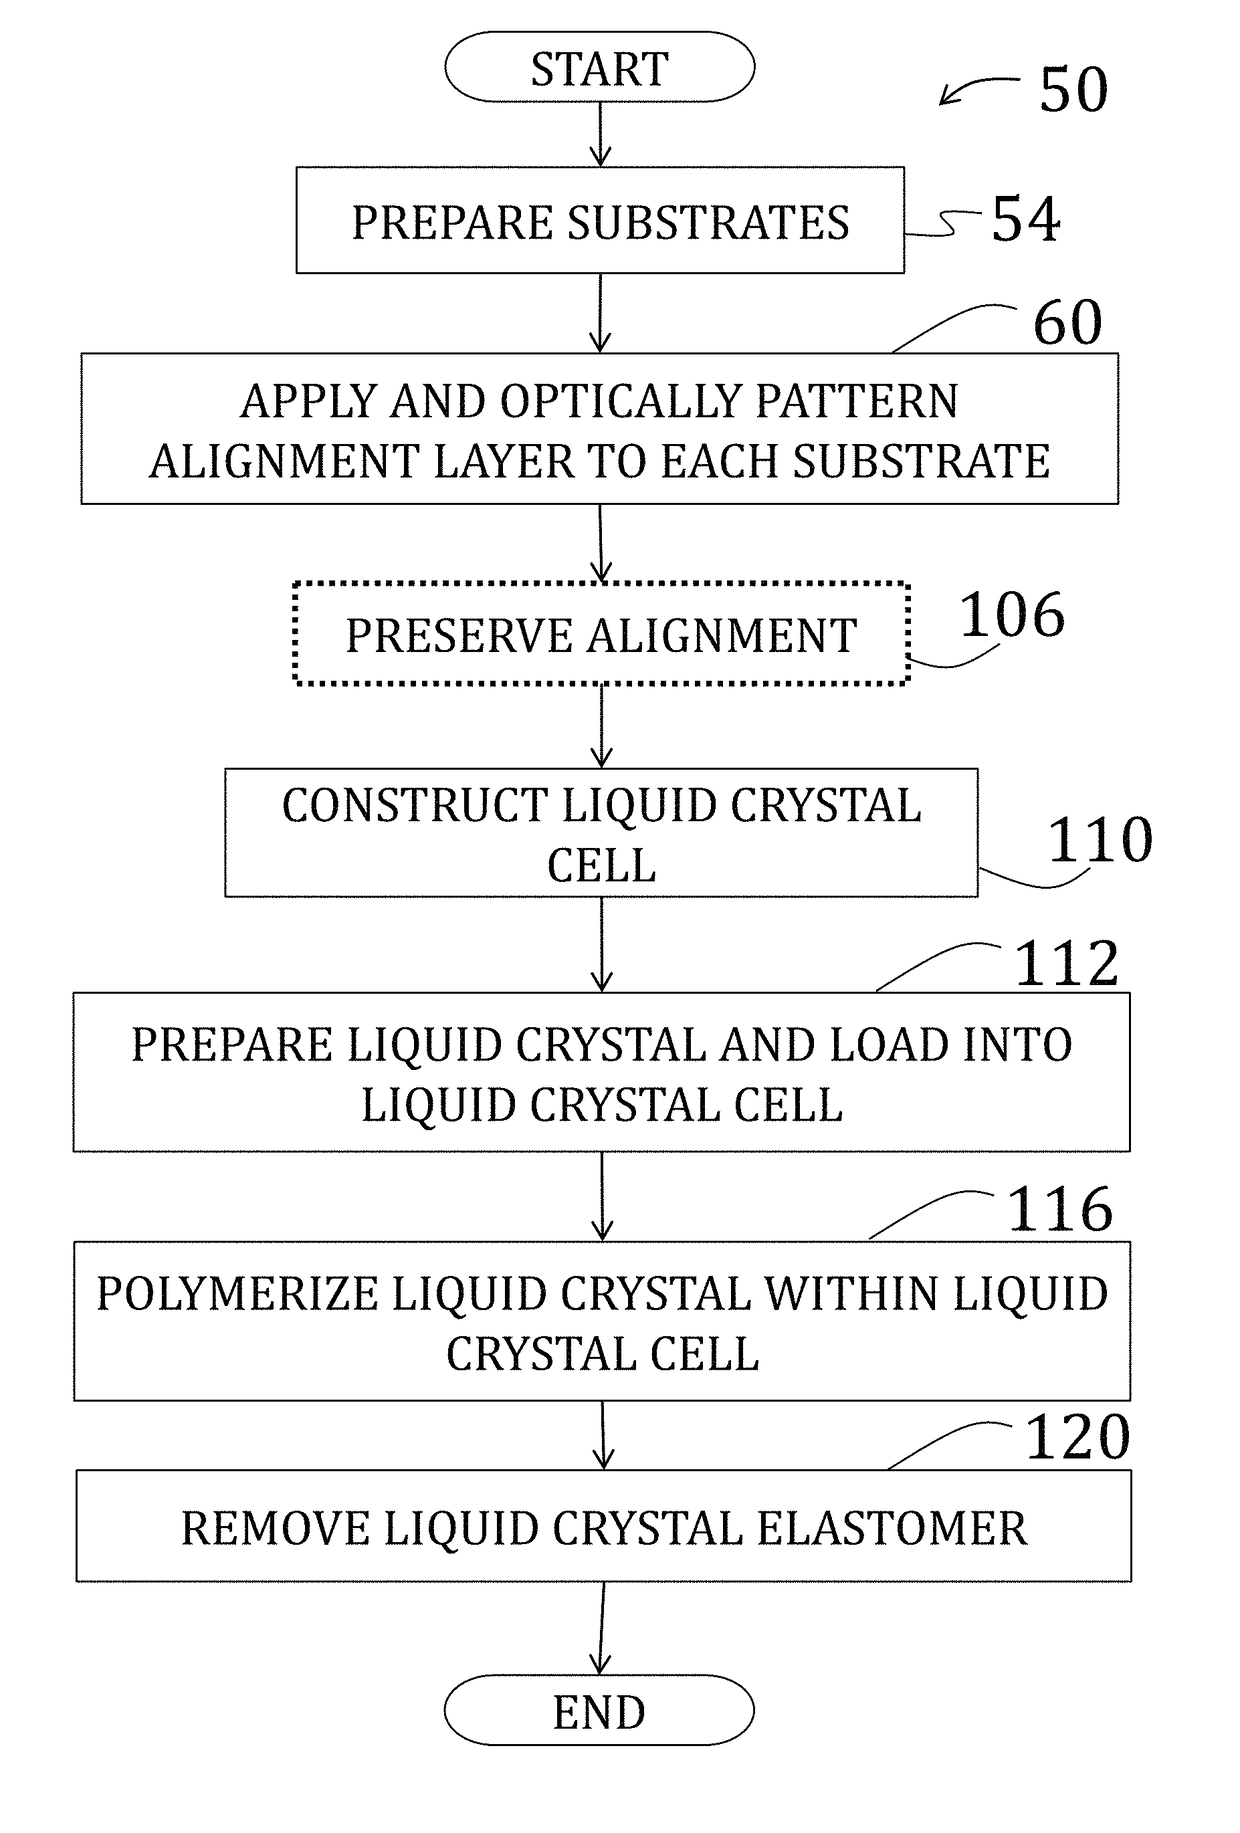 Voxelated liquid crystal elastomers